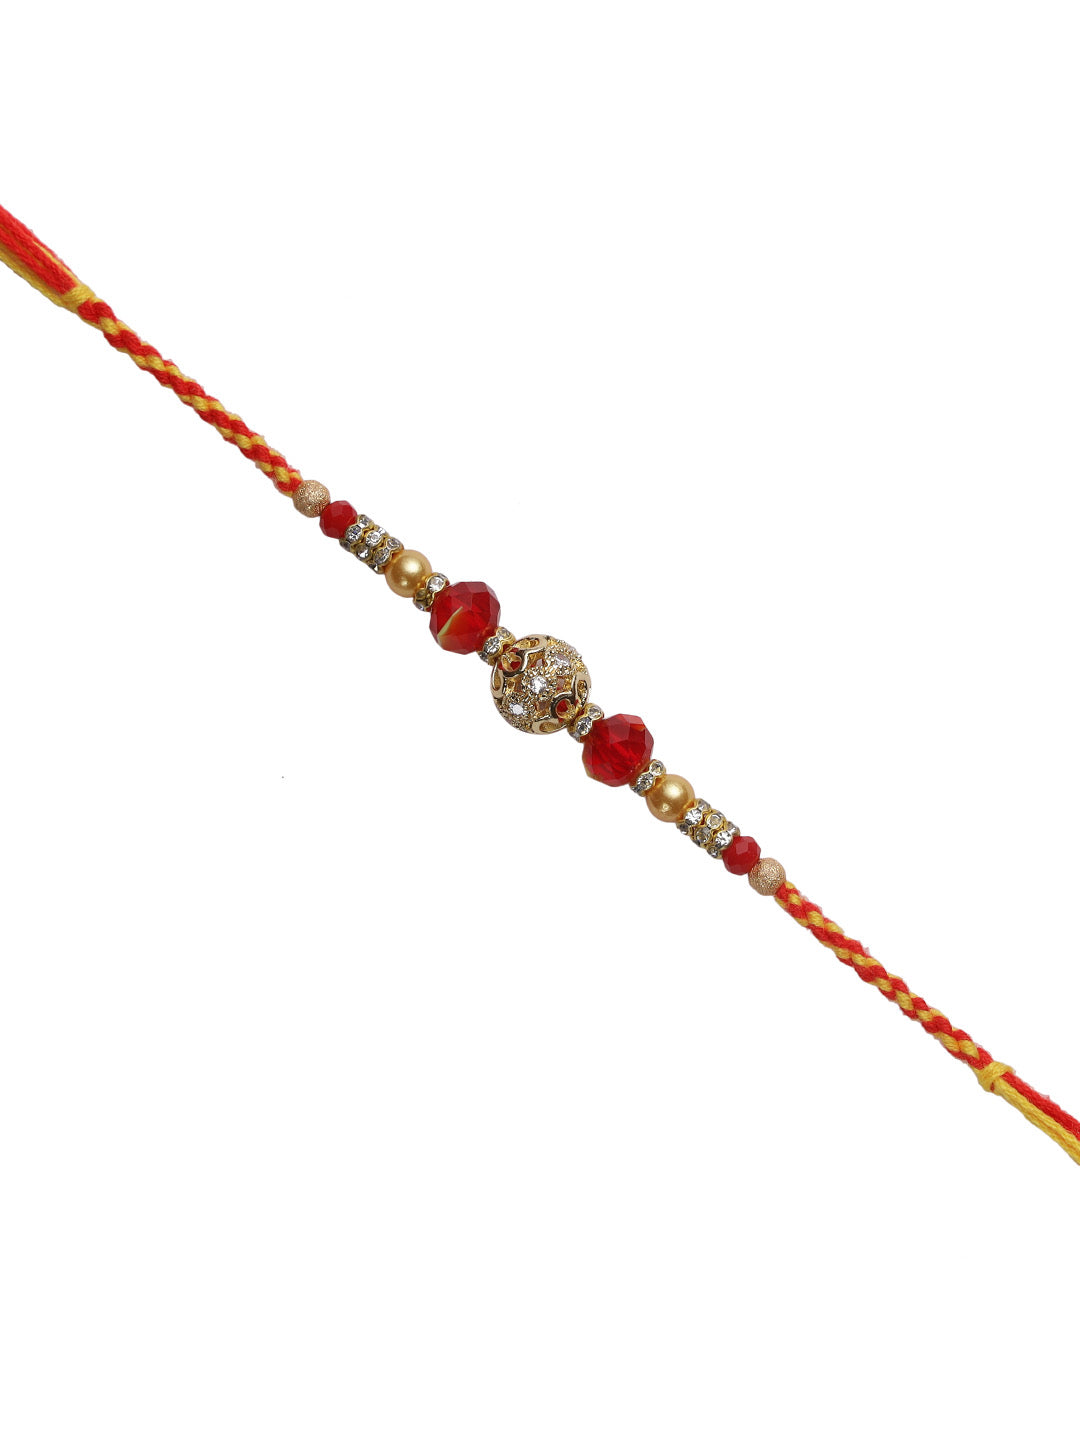 Sobre Golden Ball Rakhi with Beads and Rings - Only Rakhi (RJ22164)